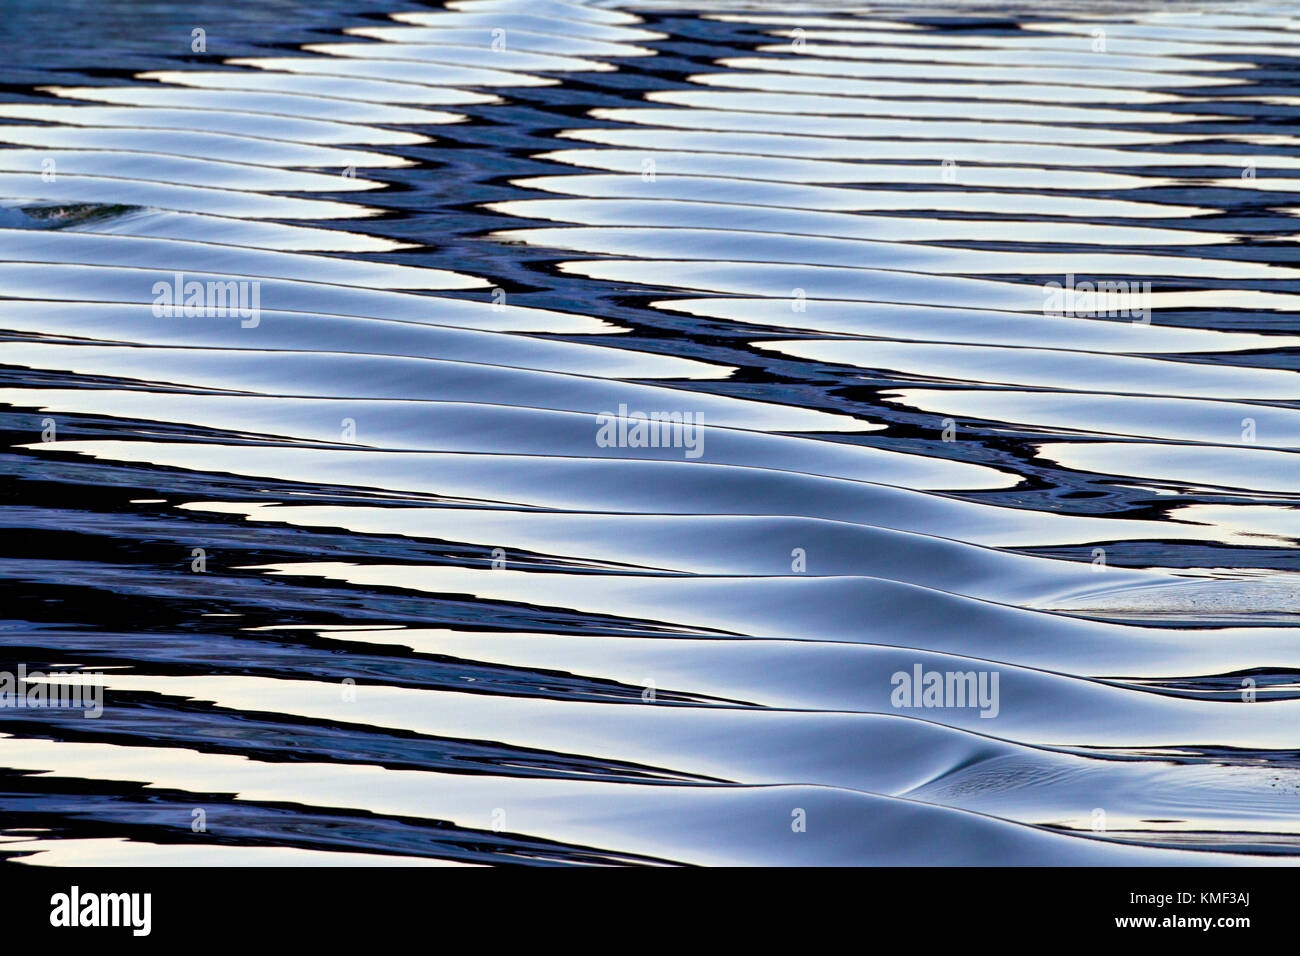 Abstract pattern répétitif des ondulations dans l'eau de mer / océan Banque D'Images